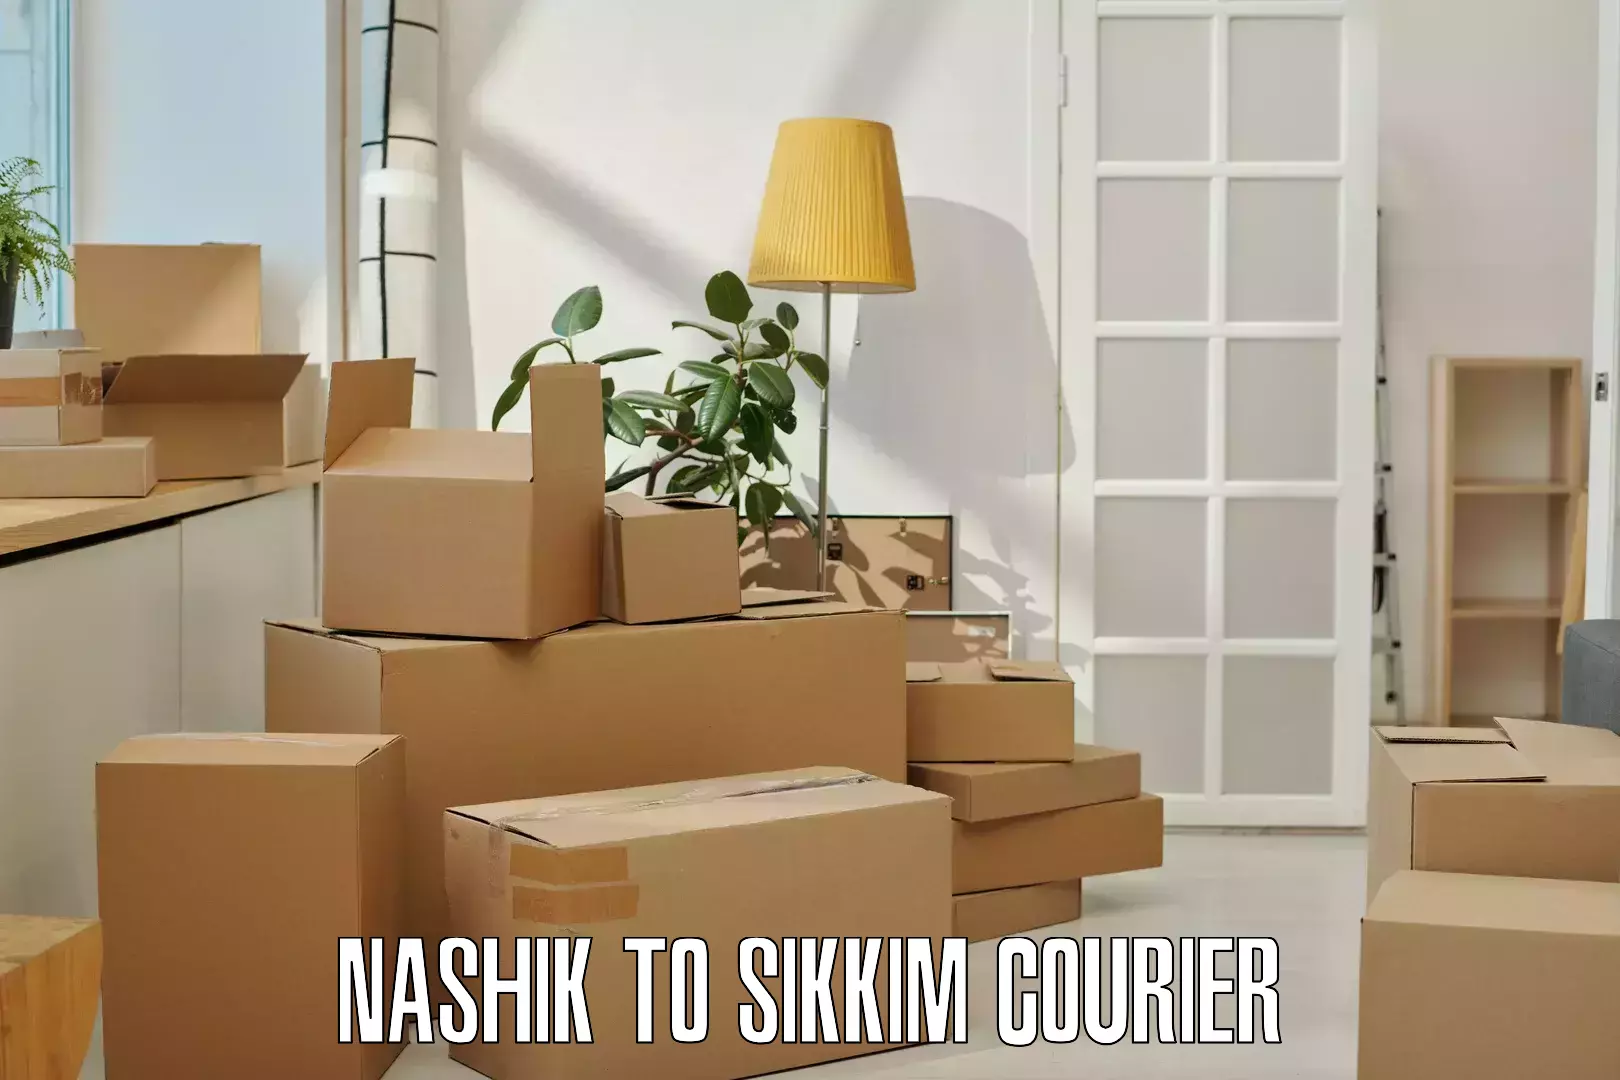 Pharmaceutical courier Nashik to Sikkim